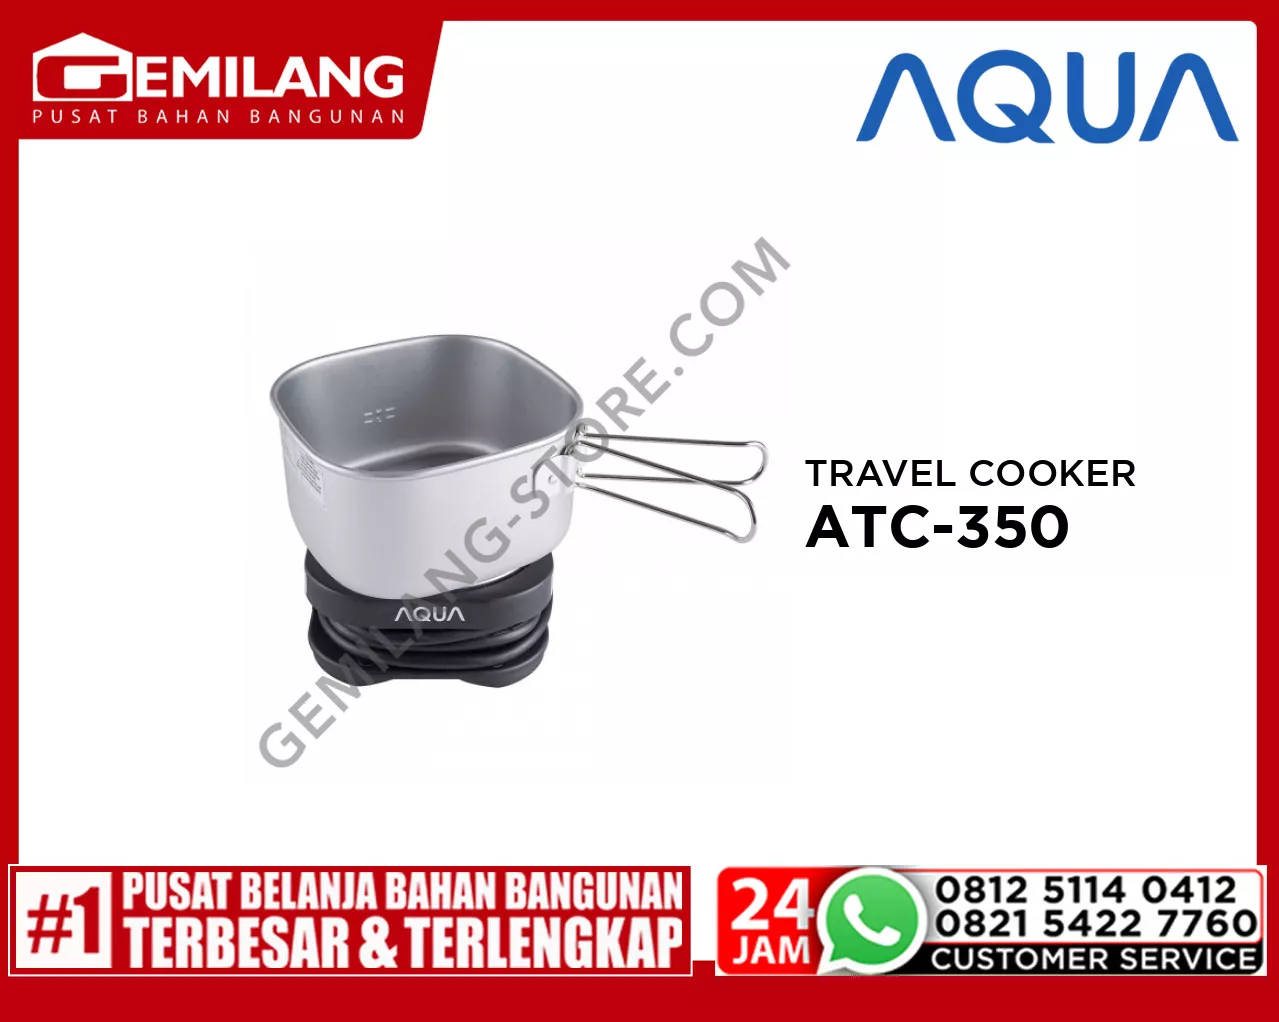 AQUA TRAVEL COOKER ATC-350